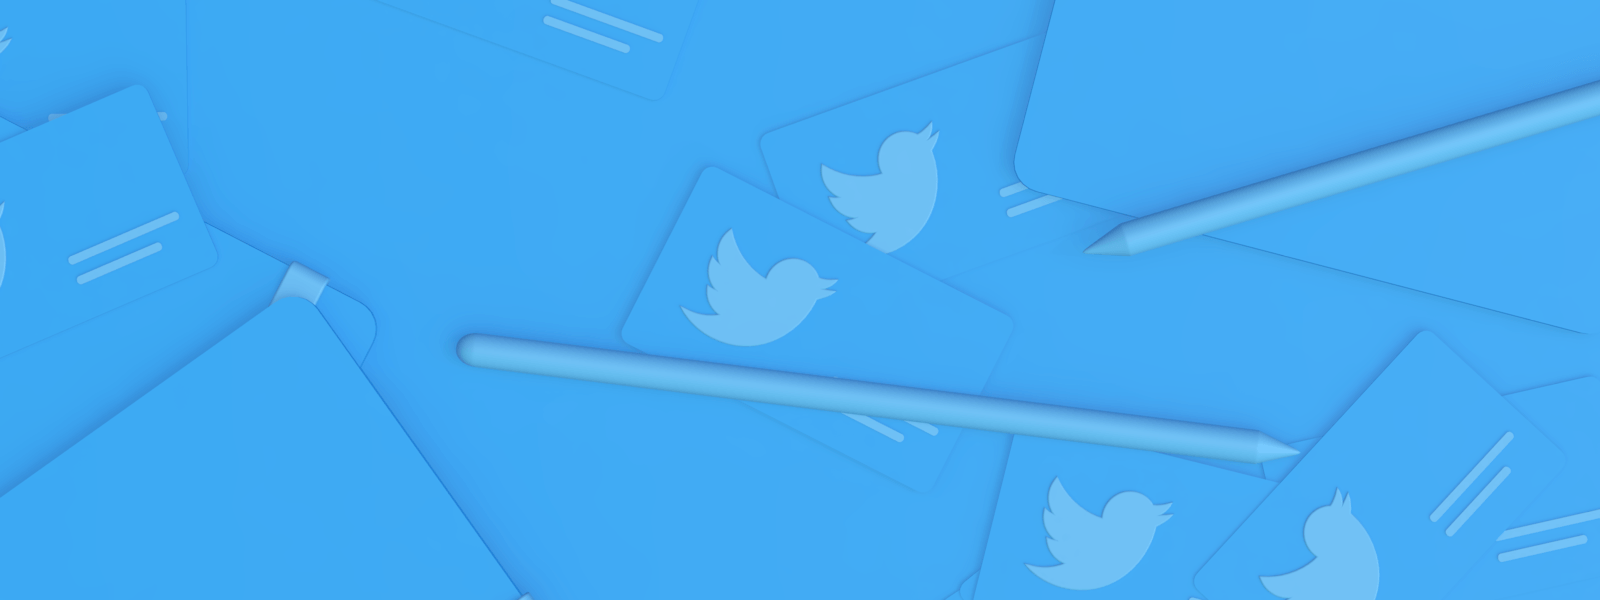 Twitter's Logo - Twitter Brand Resources